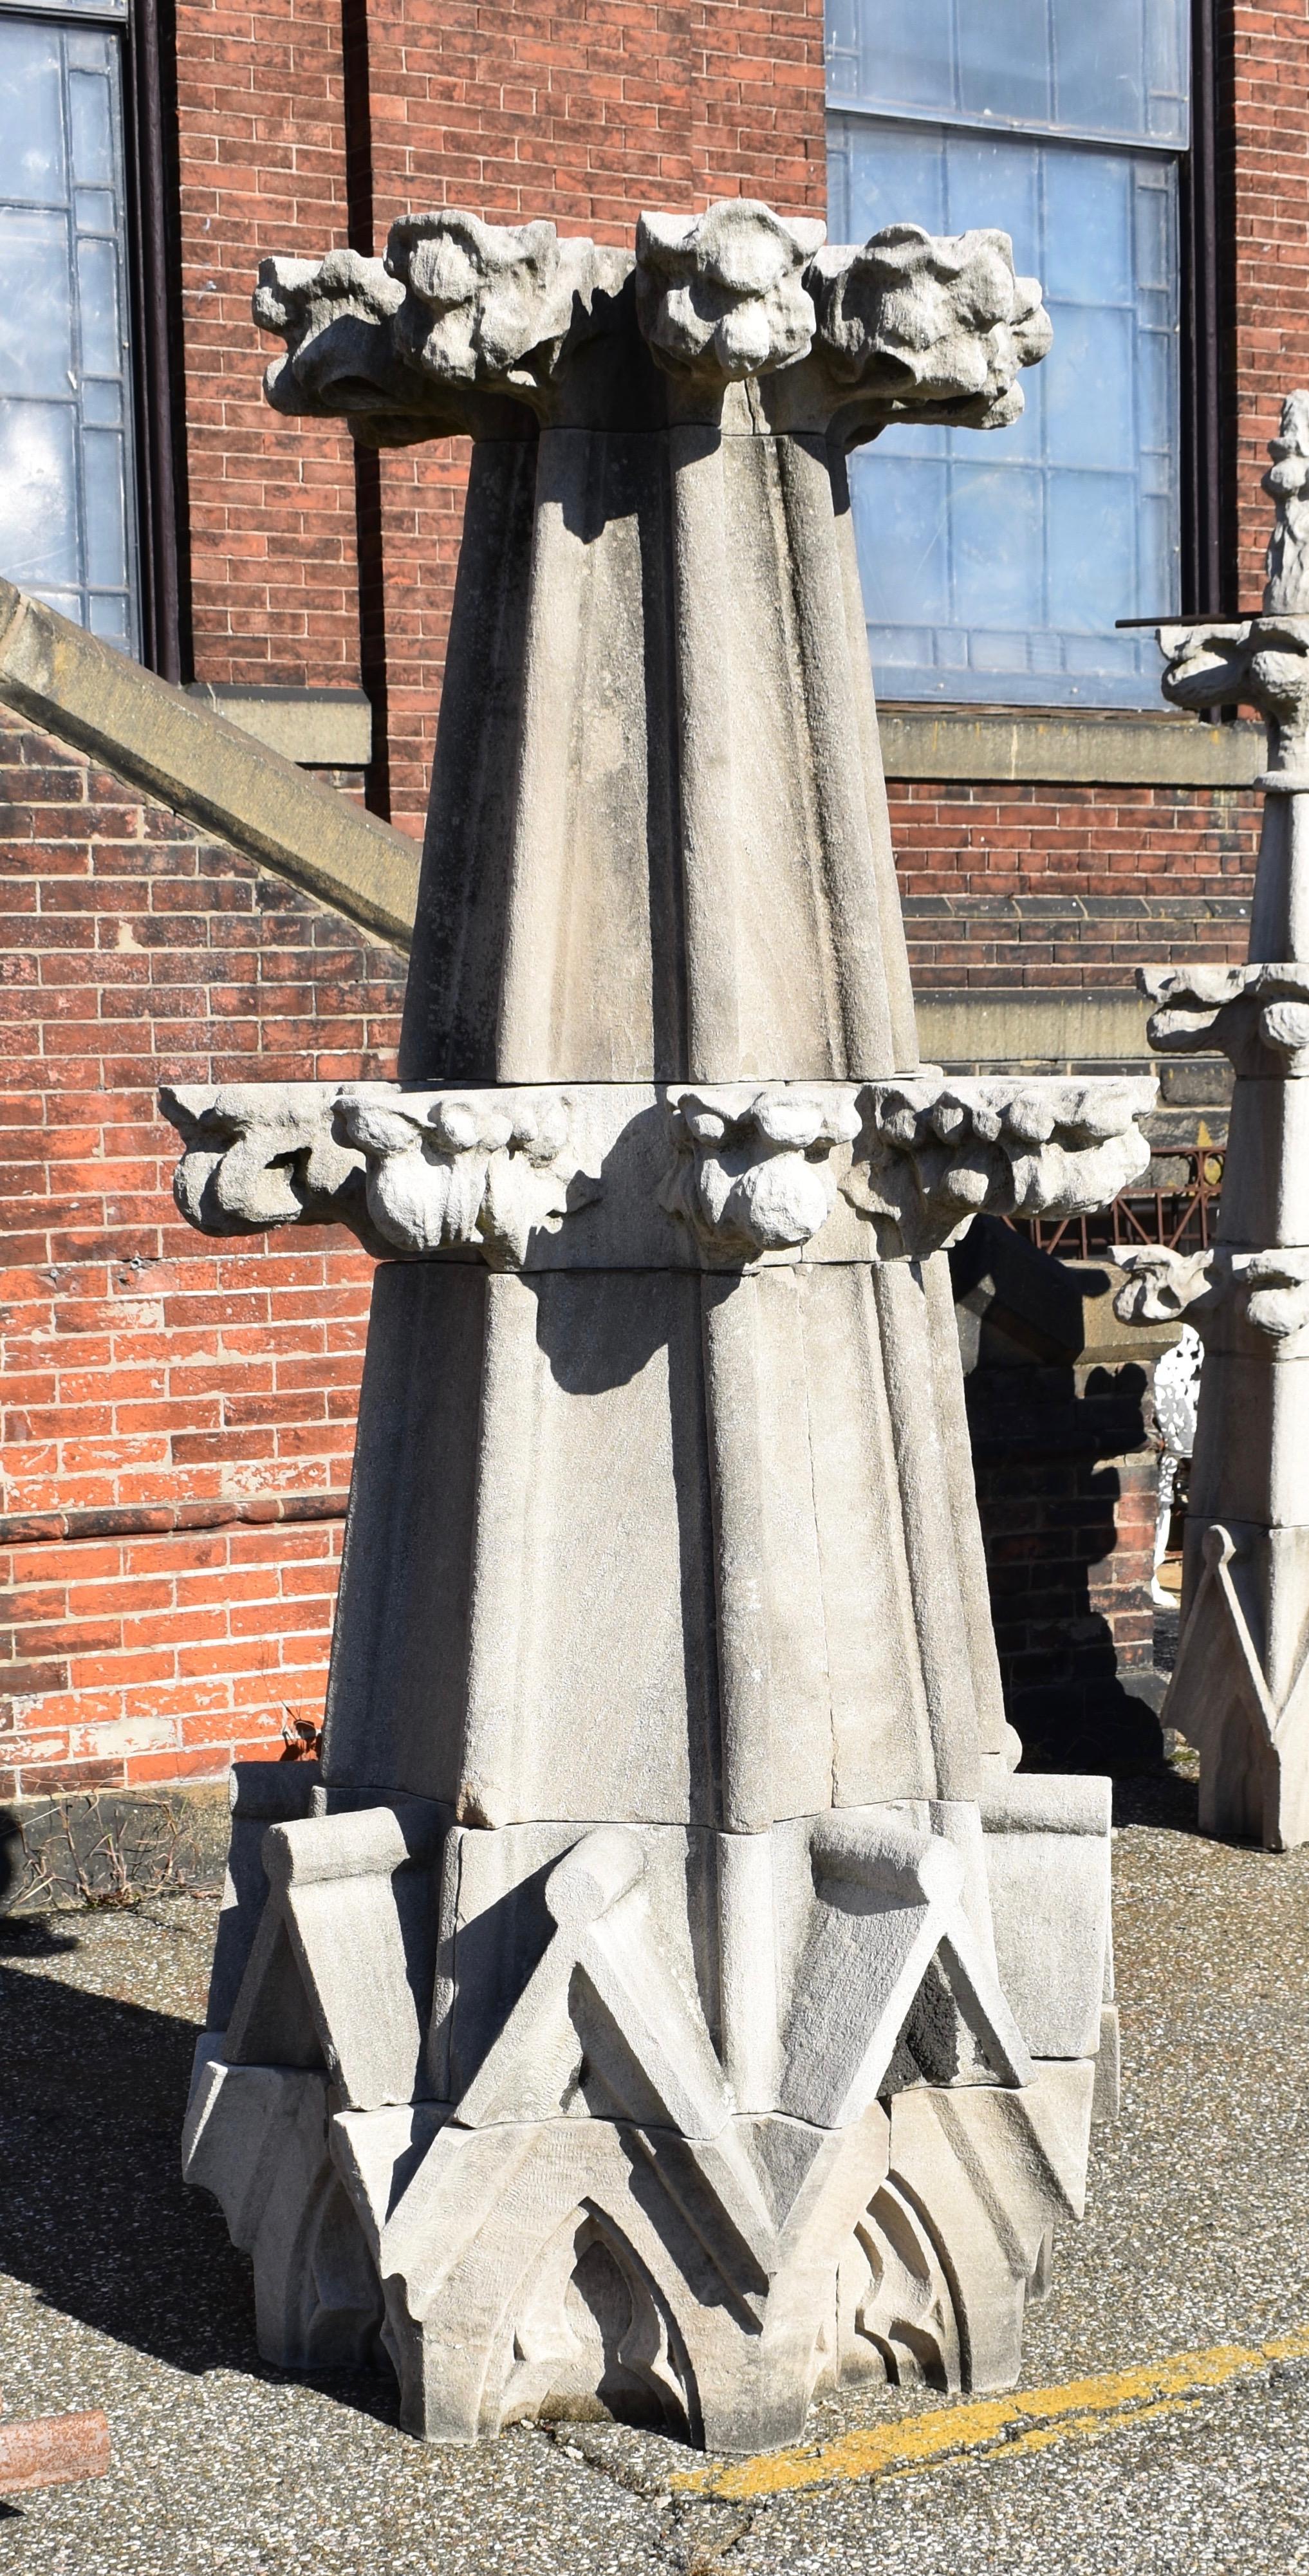 Wir bieten zwei monumentale Kalkstein-Finials aus dem späten 19. Jahrhundert an, die aus einer Kathedrale in Baltimore gerettet wurden. Jede Turmspitze besteht aus fünfzehn einzelnen behauenen Steinblöcken. Die Steine können trocken gestapelt oder